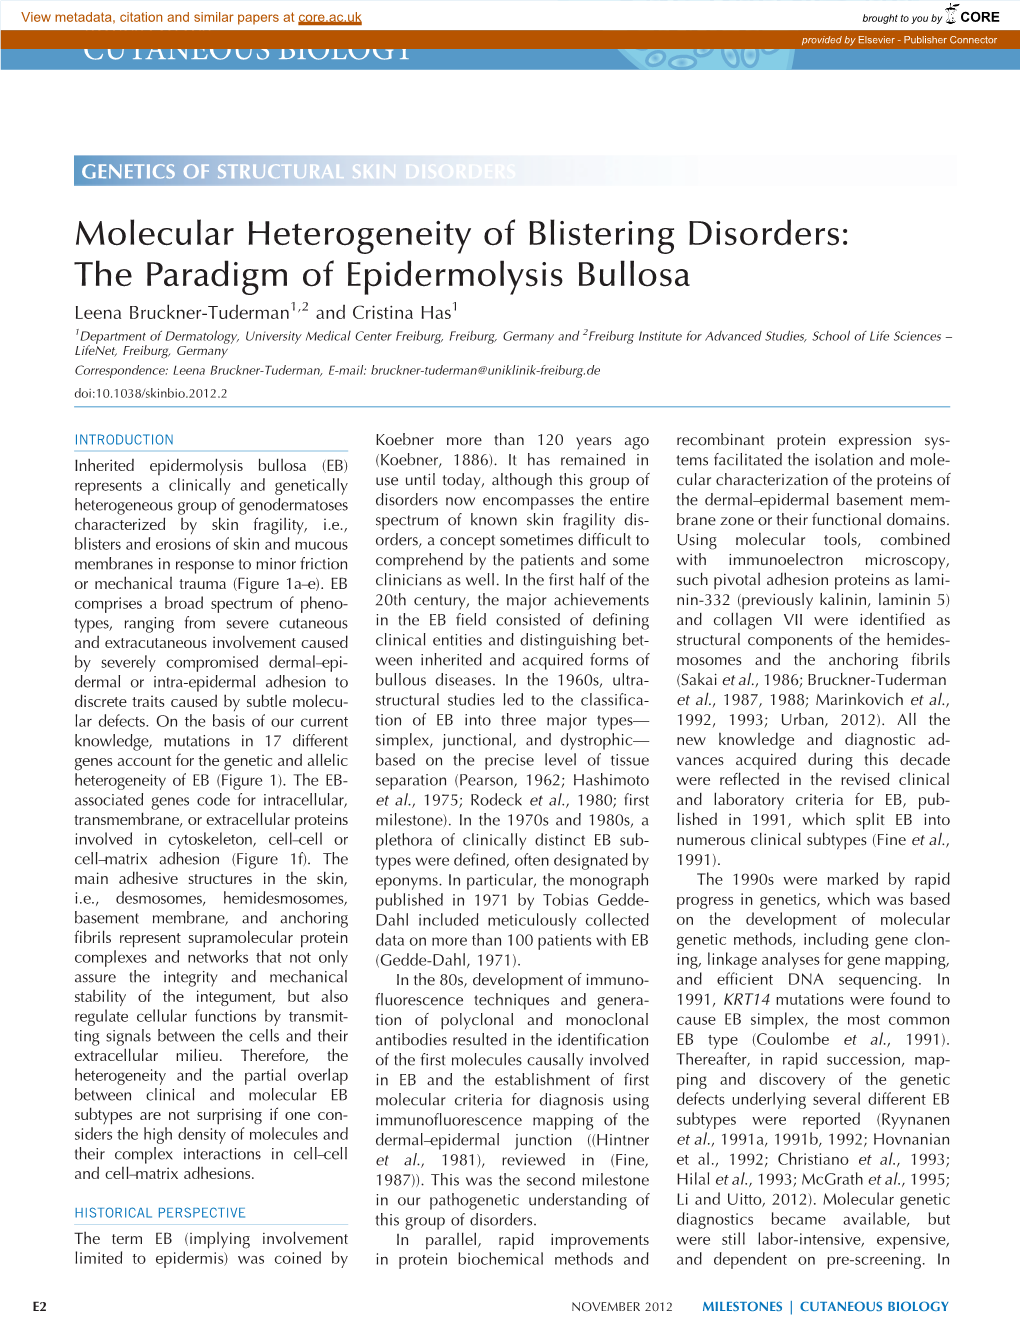 Molecular Heterogeneity of Blistering Disorders